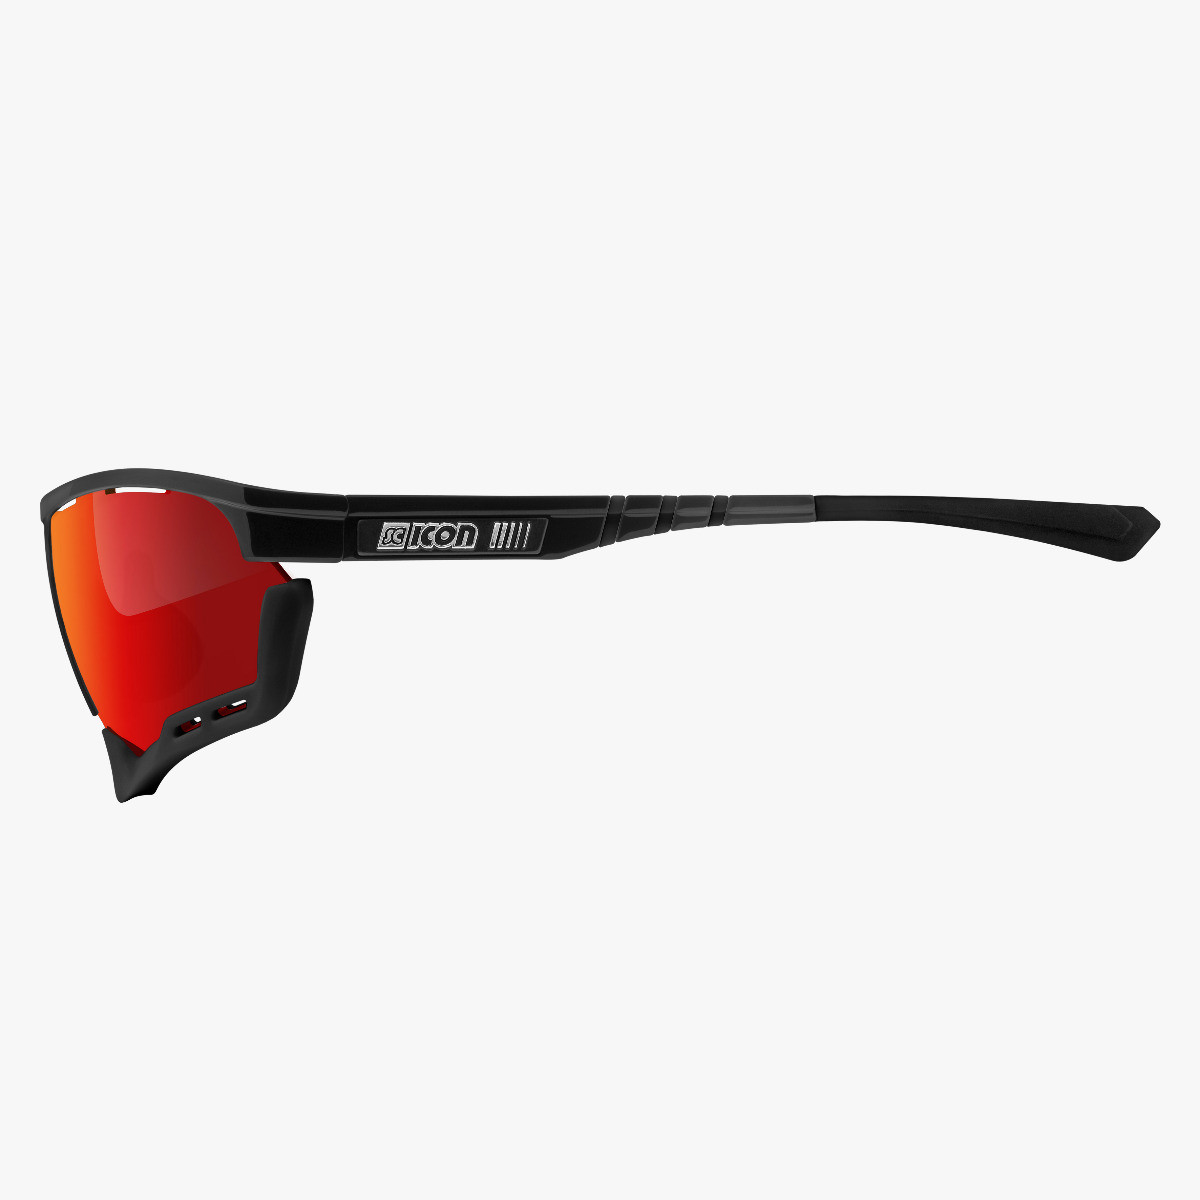 Aerocomfort performance sunglasses scnpp black frame red lenses EY19060203
